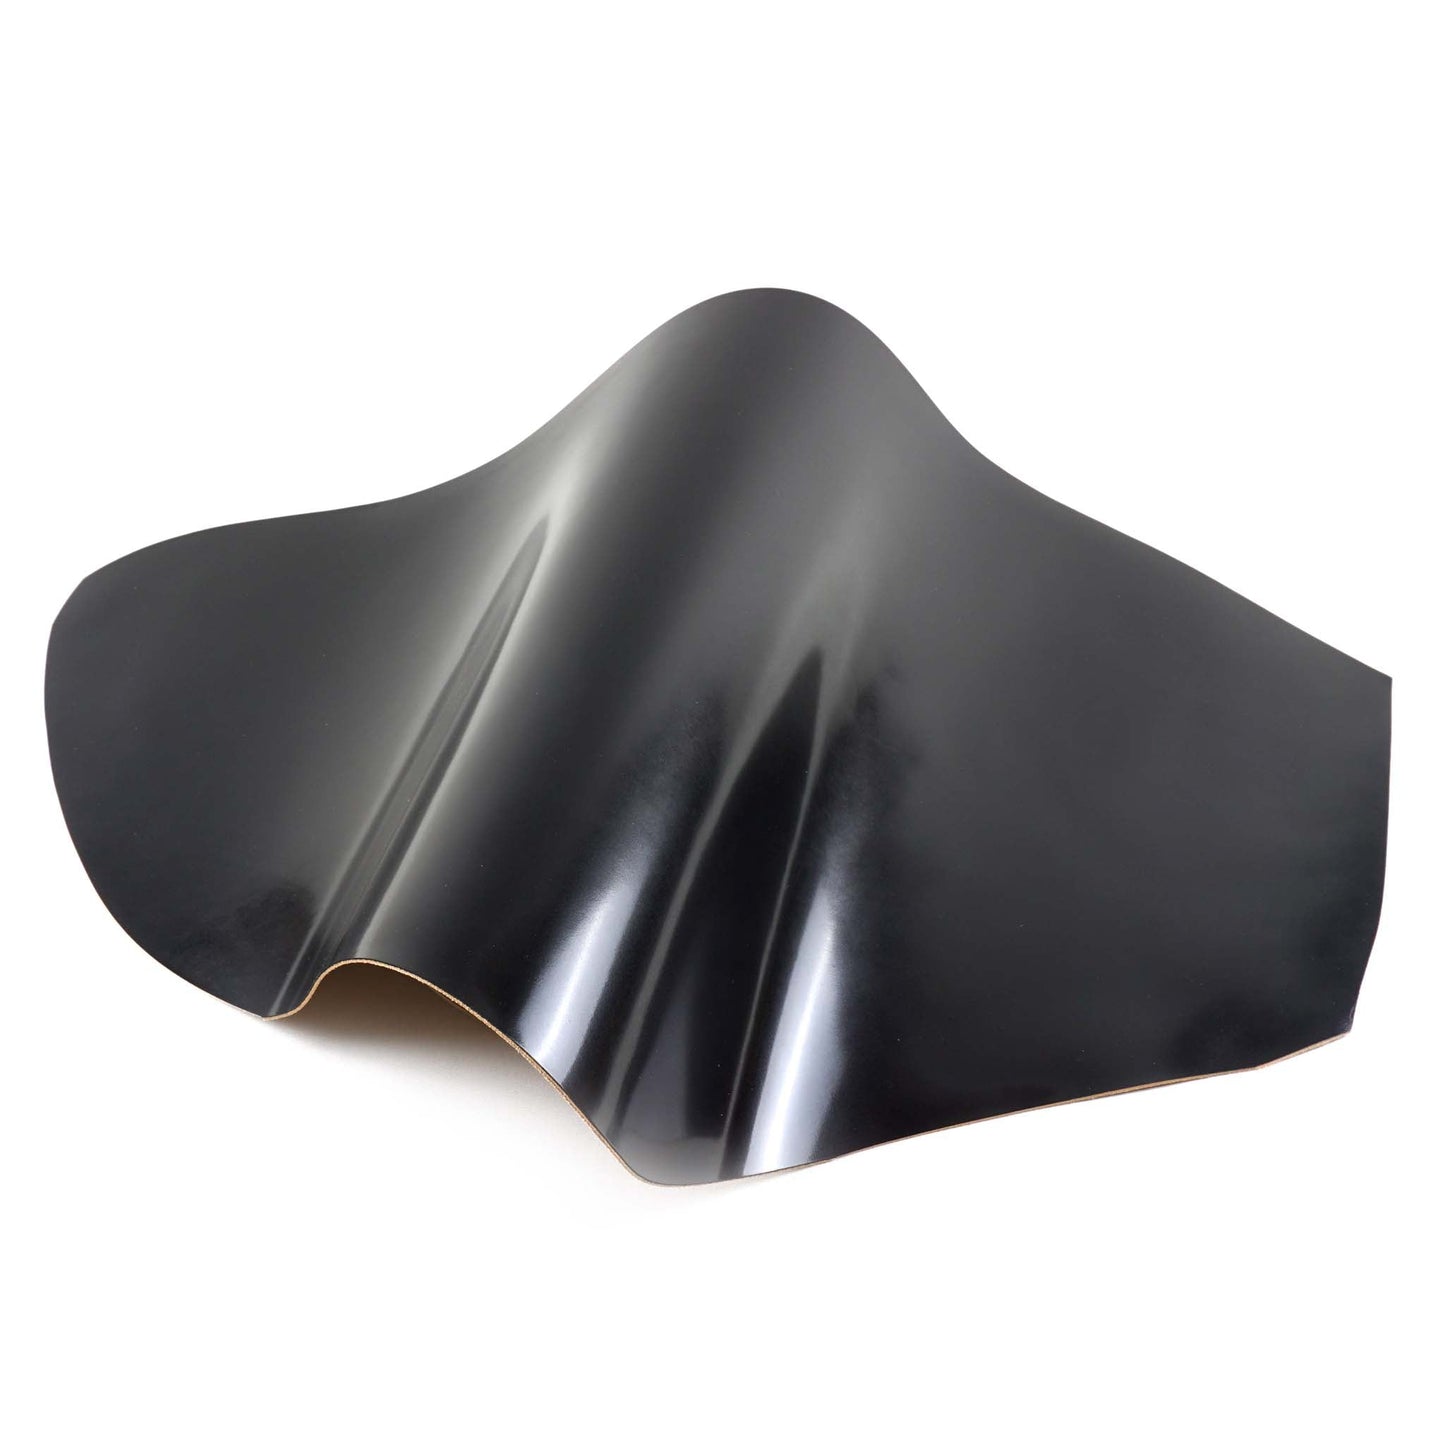 Rocado shell cordovan Classic finish color Black top